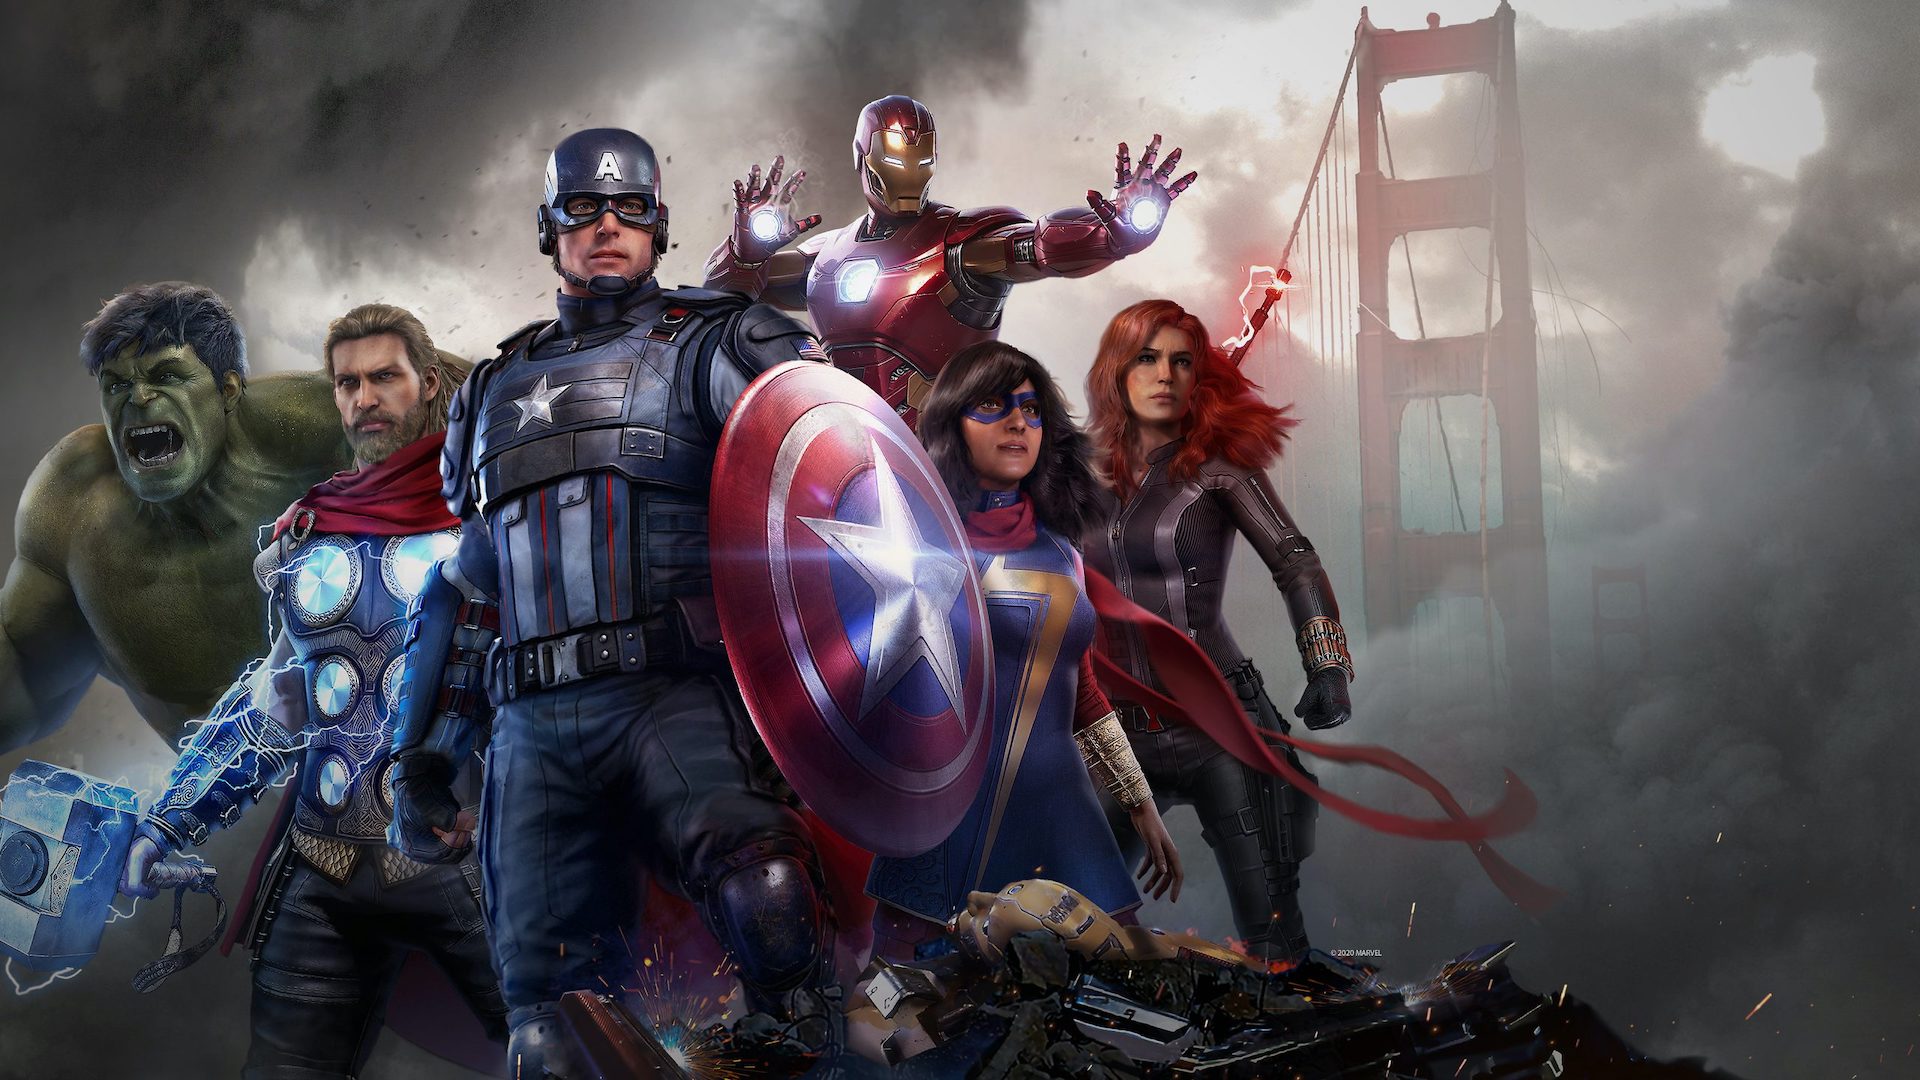 Marvels Avengers dealbh 3